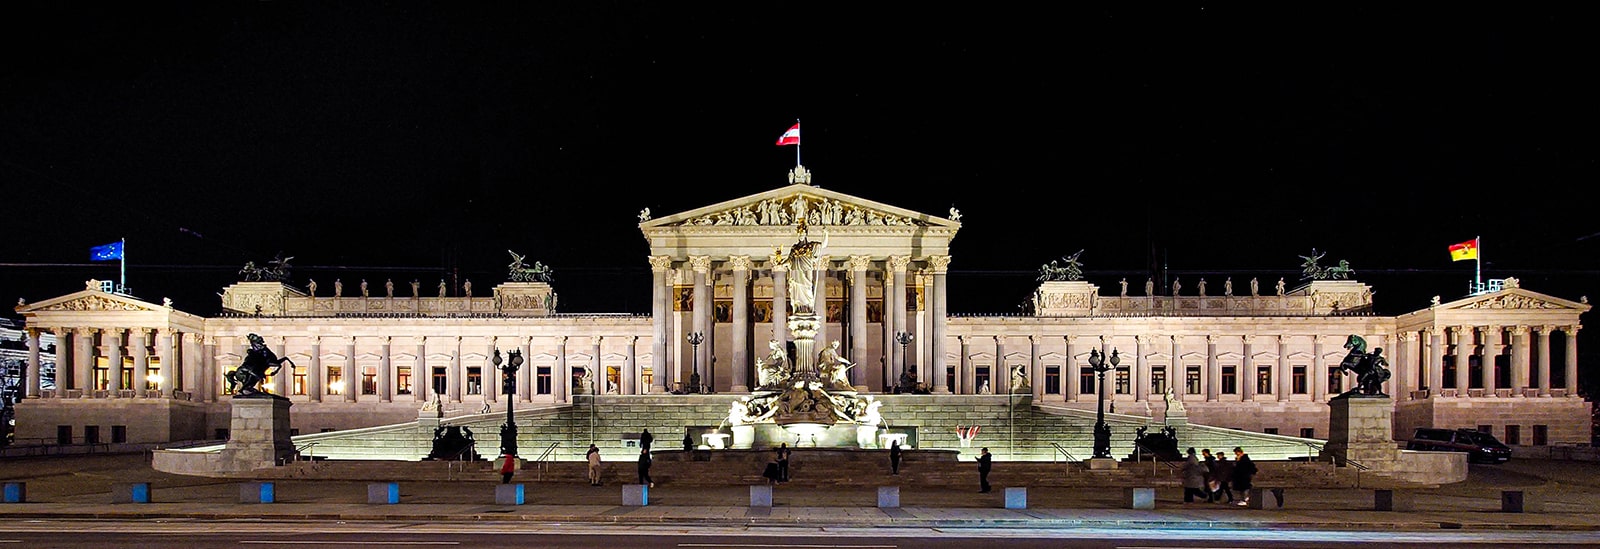 Parlament Wien - Gesamtansicht bei Nacht - www.wien-erleben.com